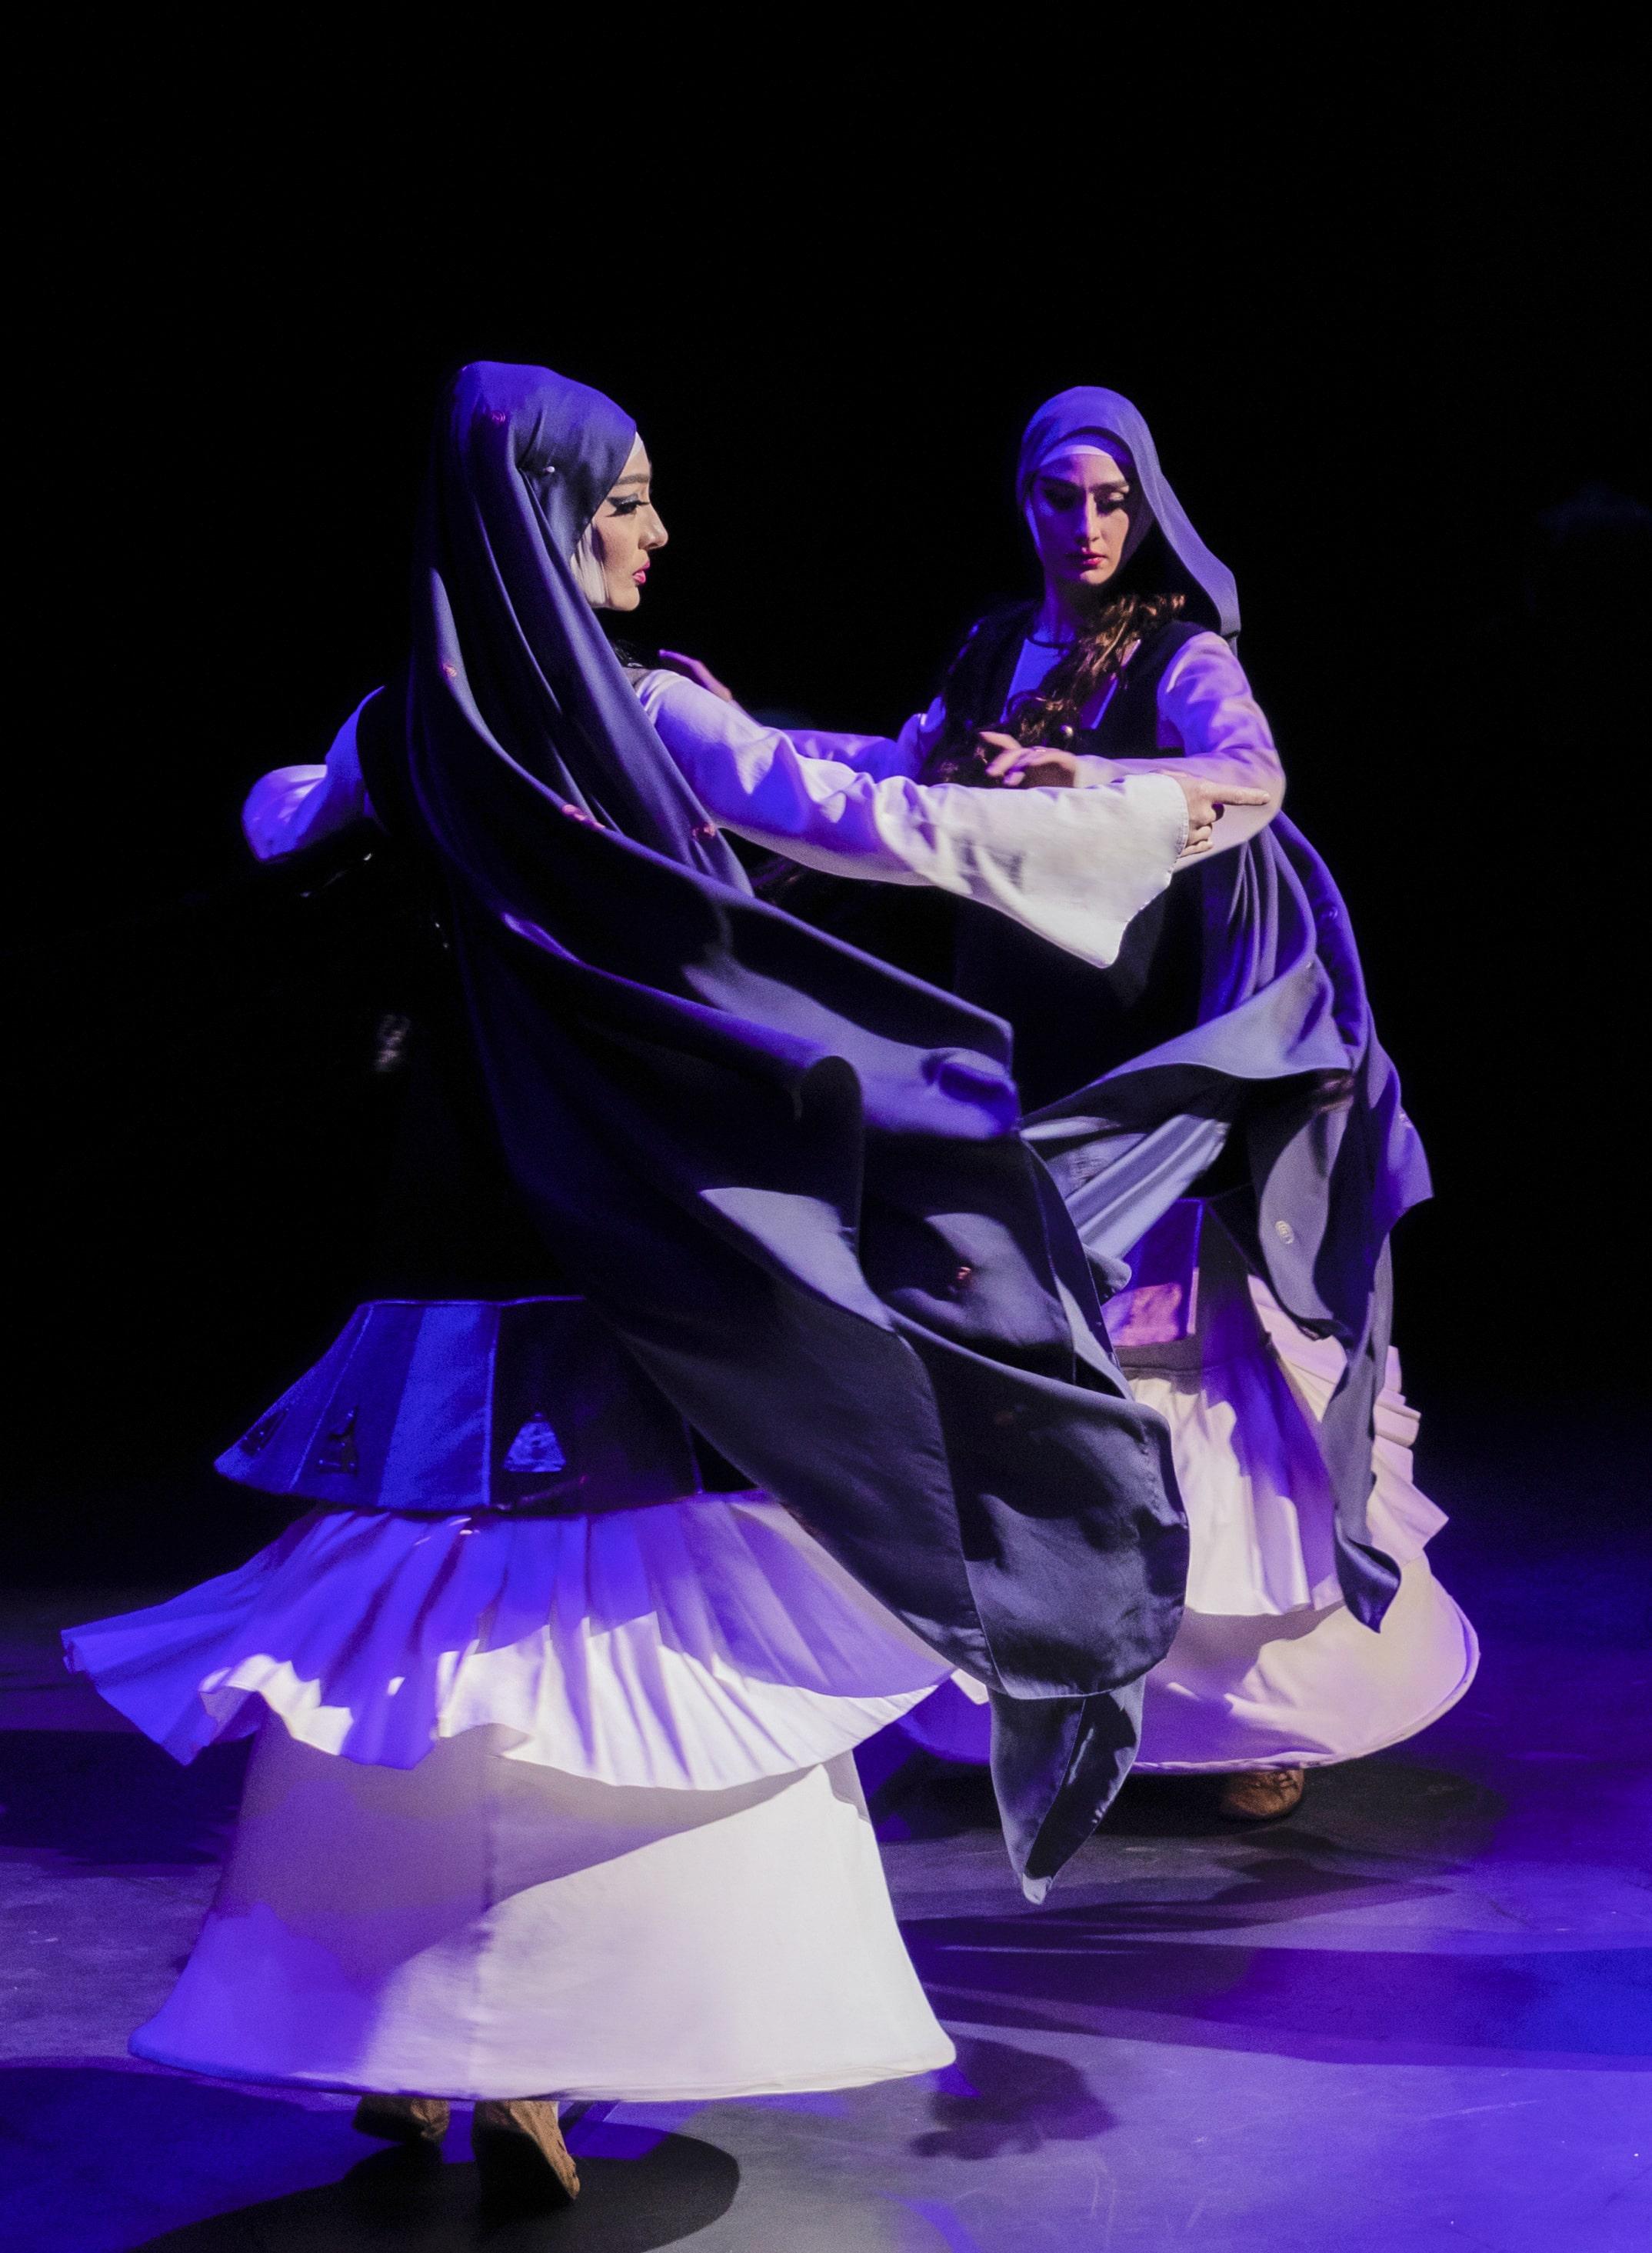 康乐及文化事务署邀得格鲁吉亚国家舞蹈团于五月三十一日及六月一日在沙田大会堂演出。图示格鲁吉亚国家舞蹈团过往演出剧照。